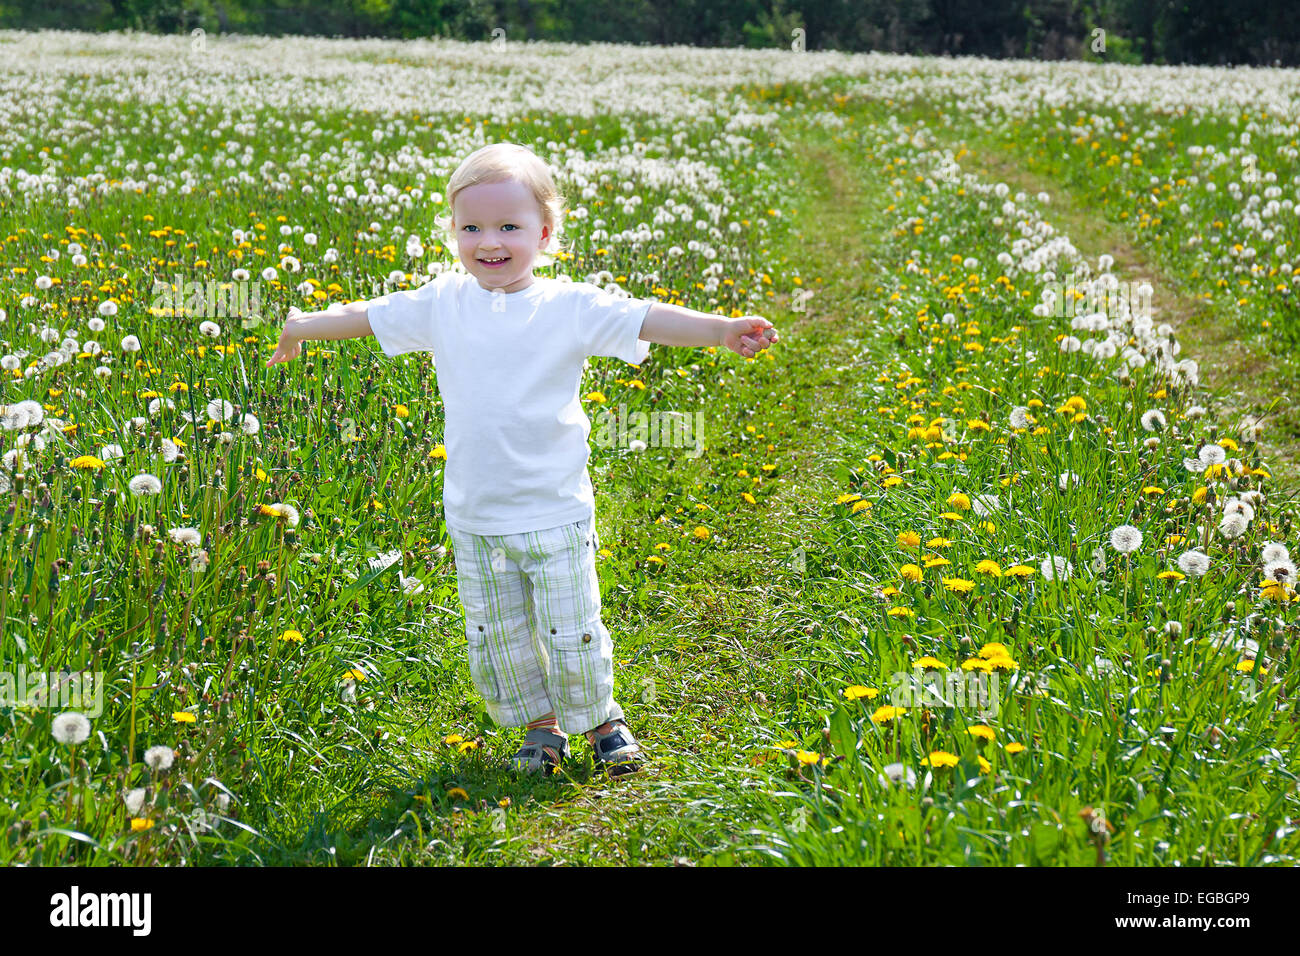 Un bambino piccolo il ragazzo gioca su un verde prato con il tarassaco Foto Stock